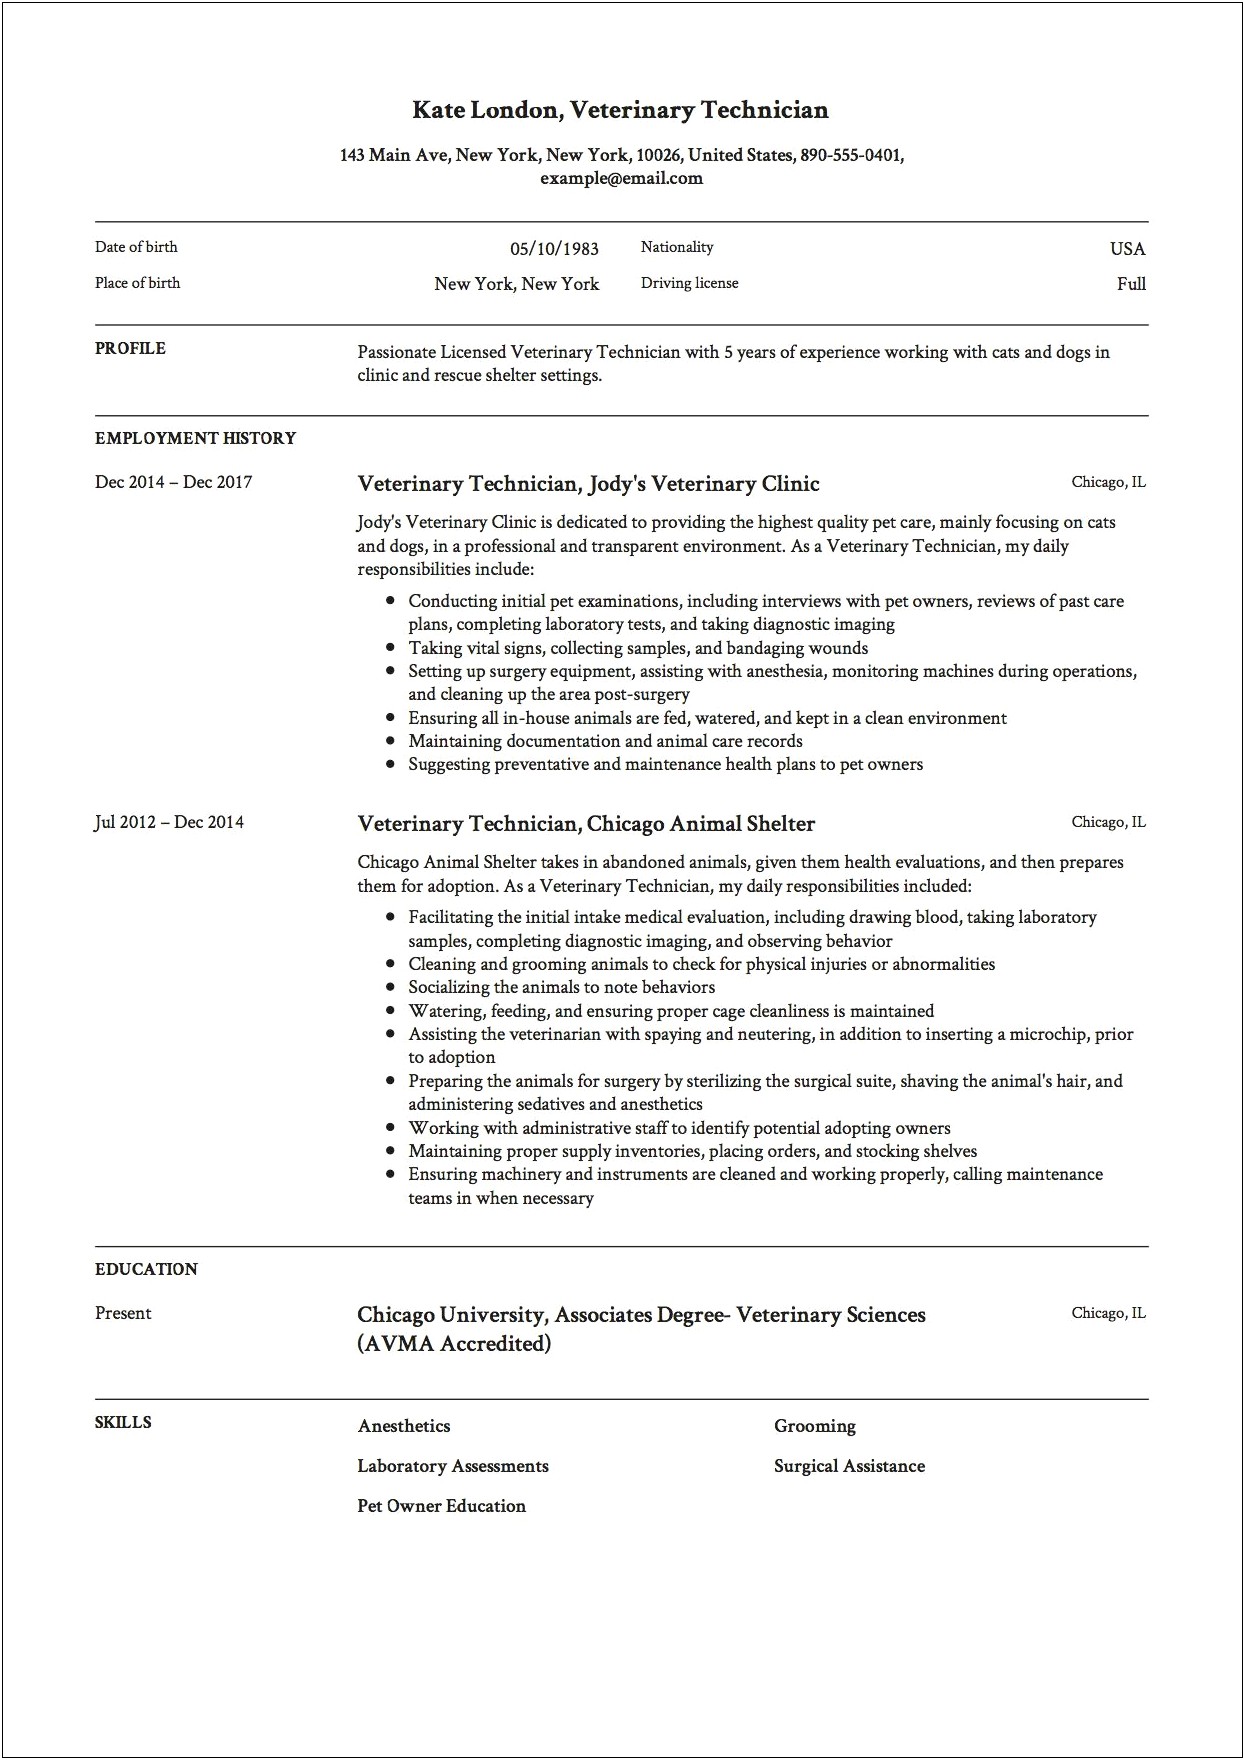 Resume Objective For Vet Tech